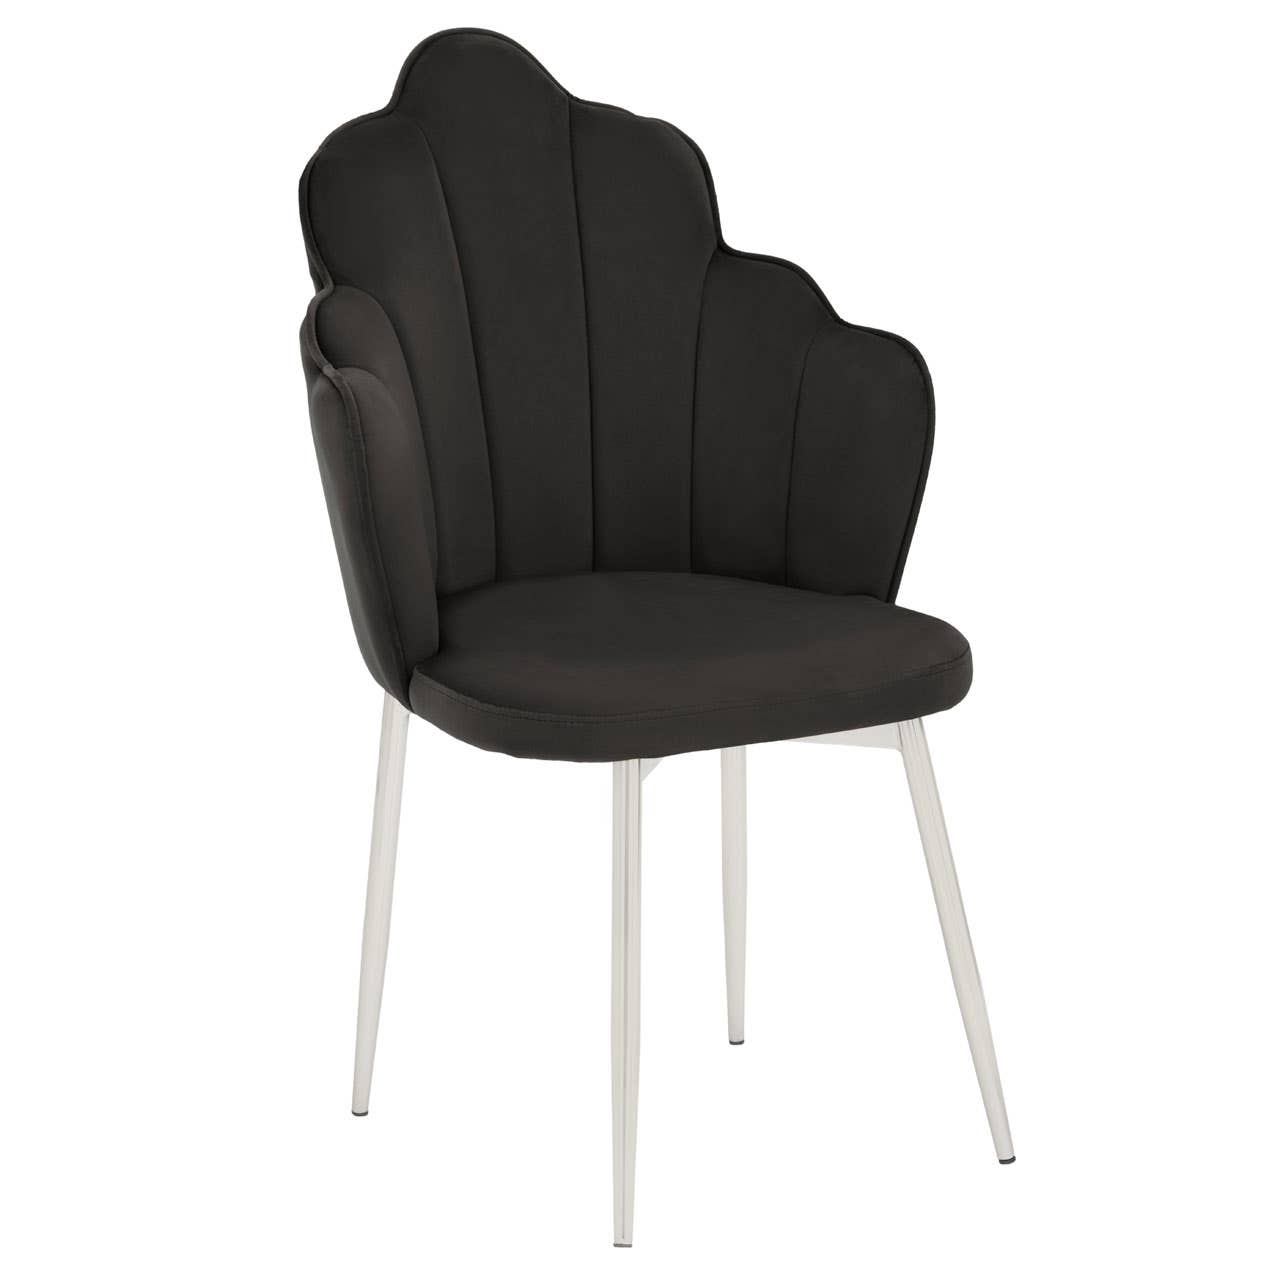 Tian Black Velvet Chair